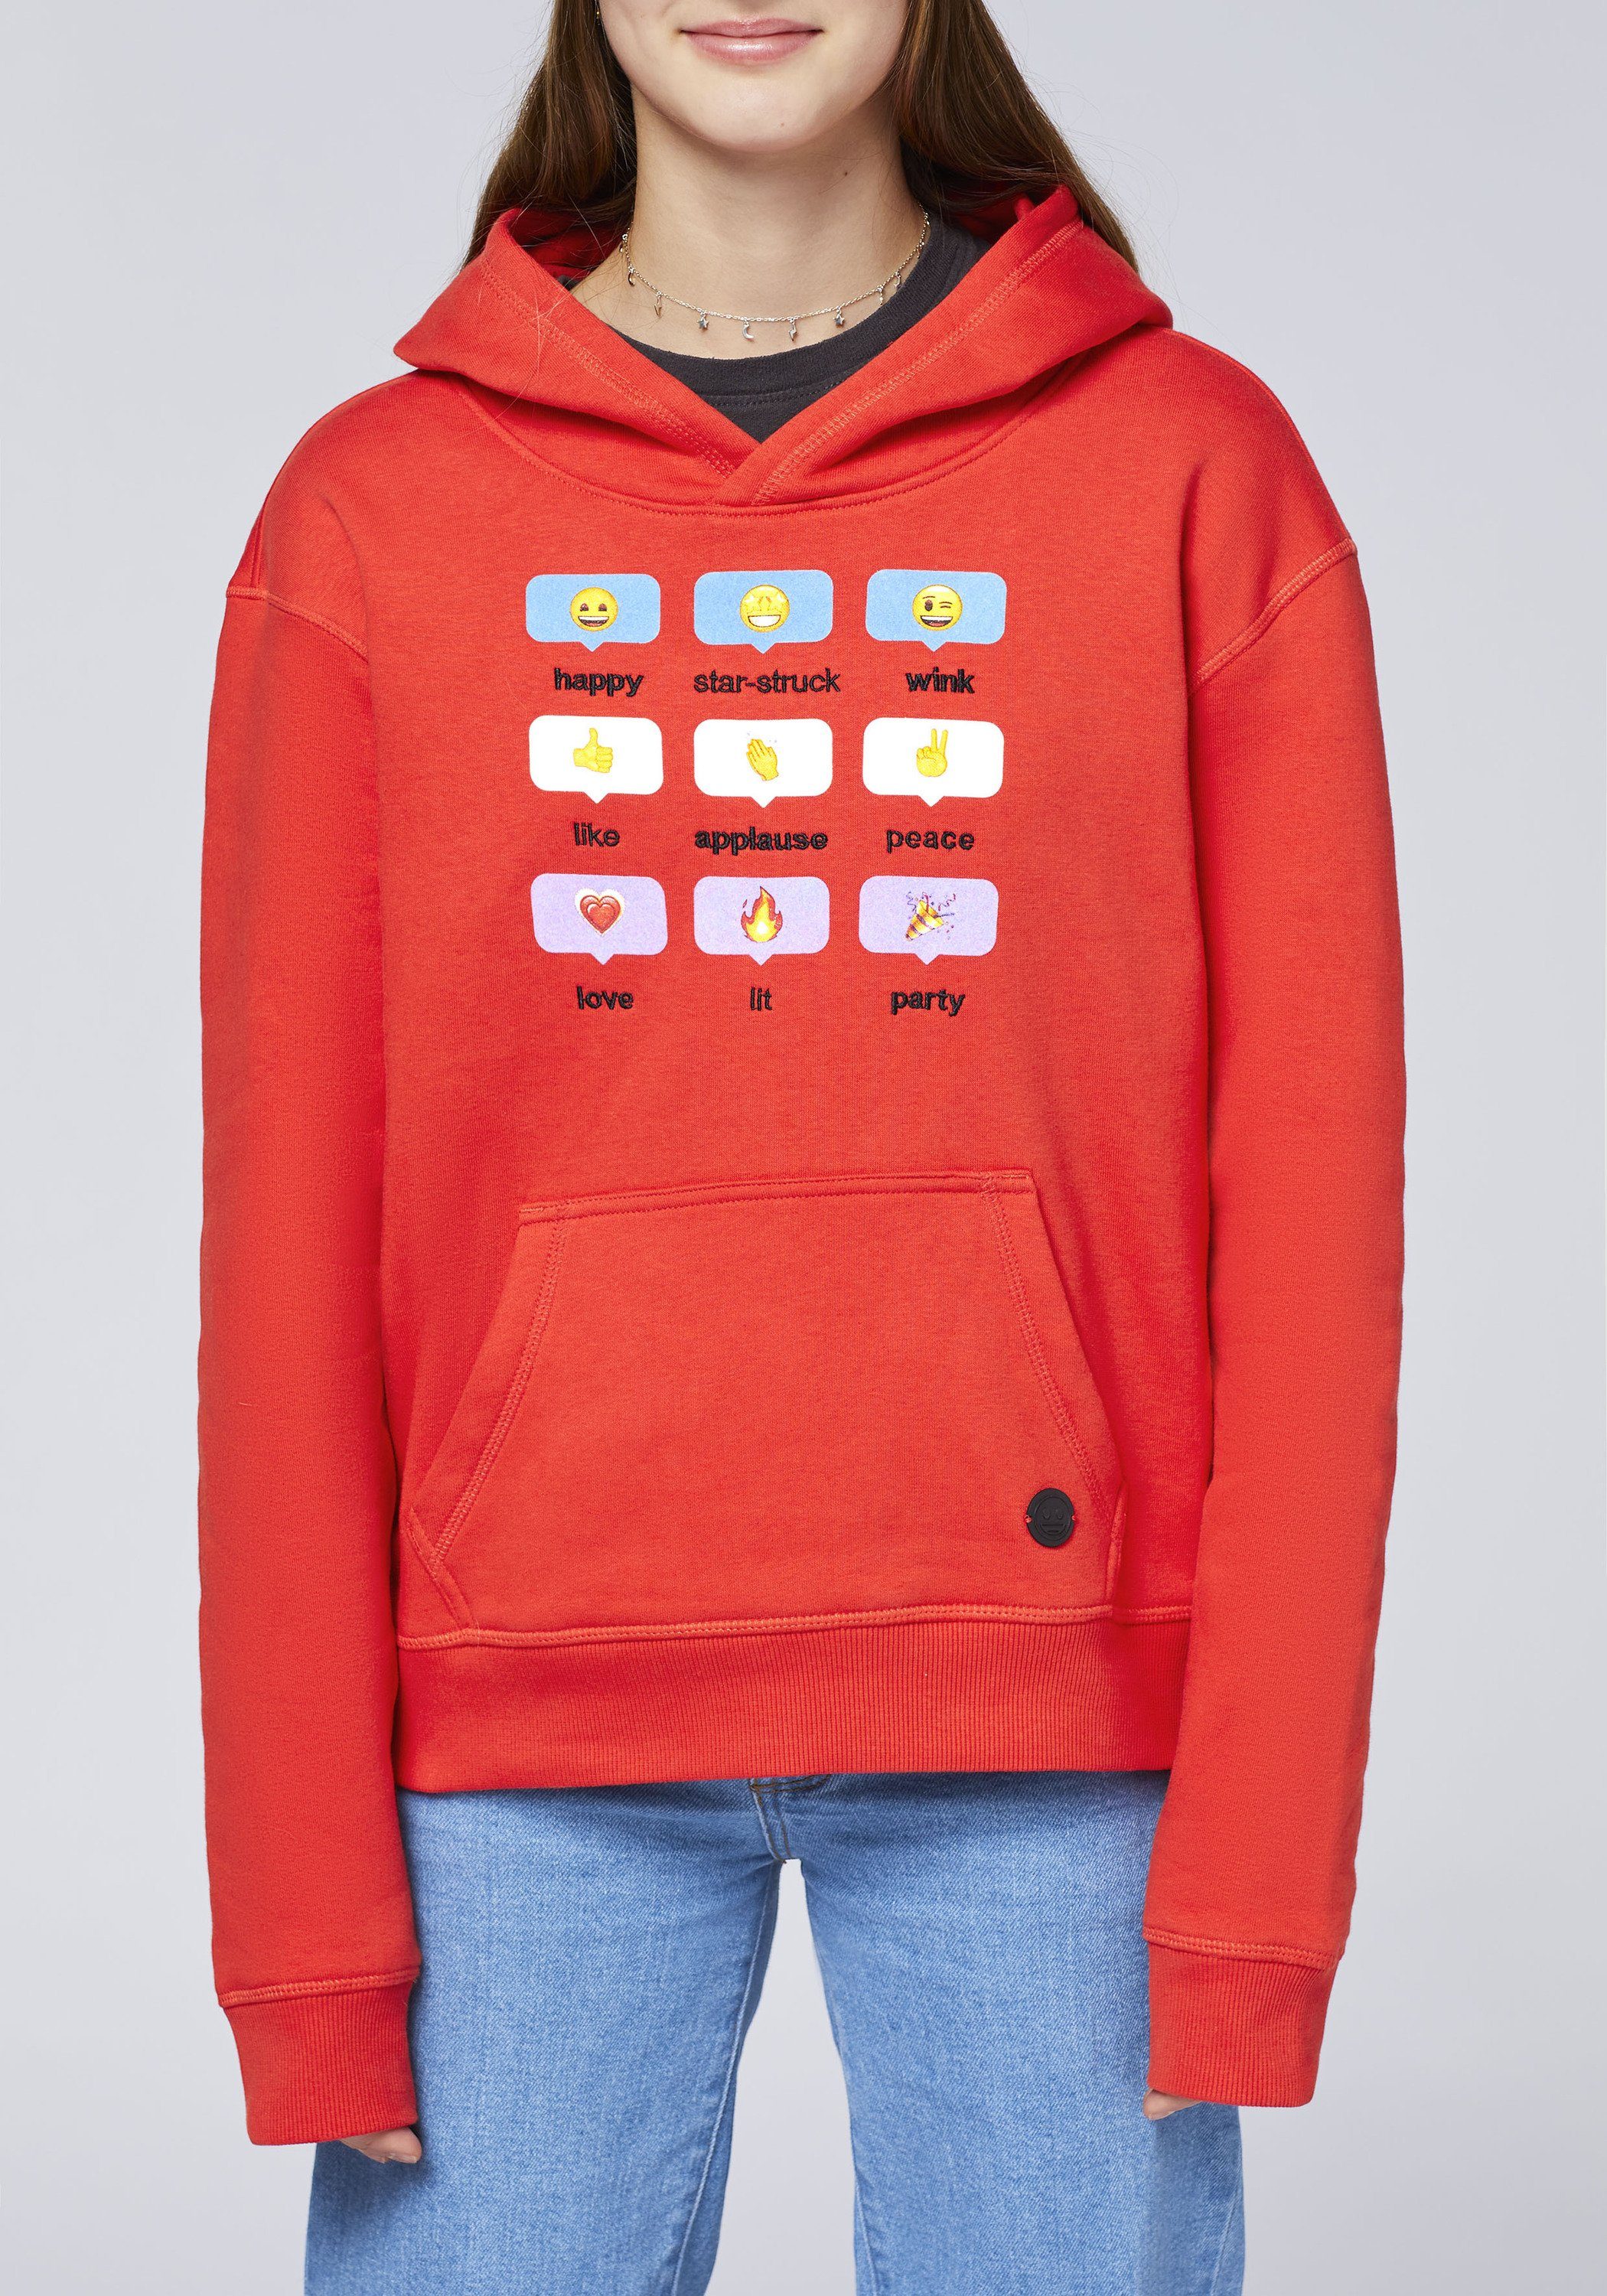 Sweatshirt und mit Co Emoji Grinsegesicht-Motiven